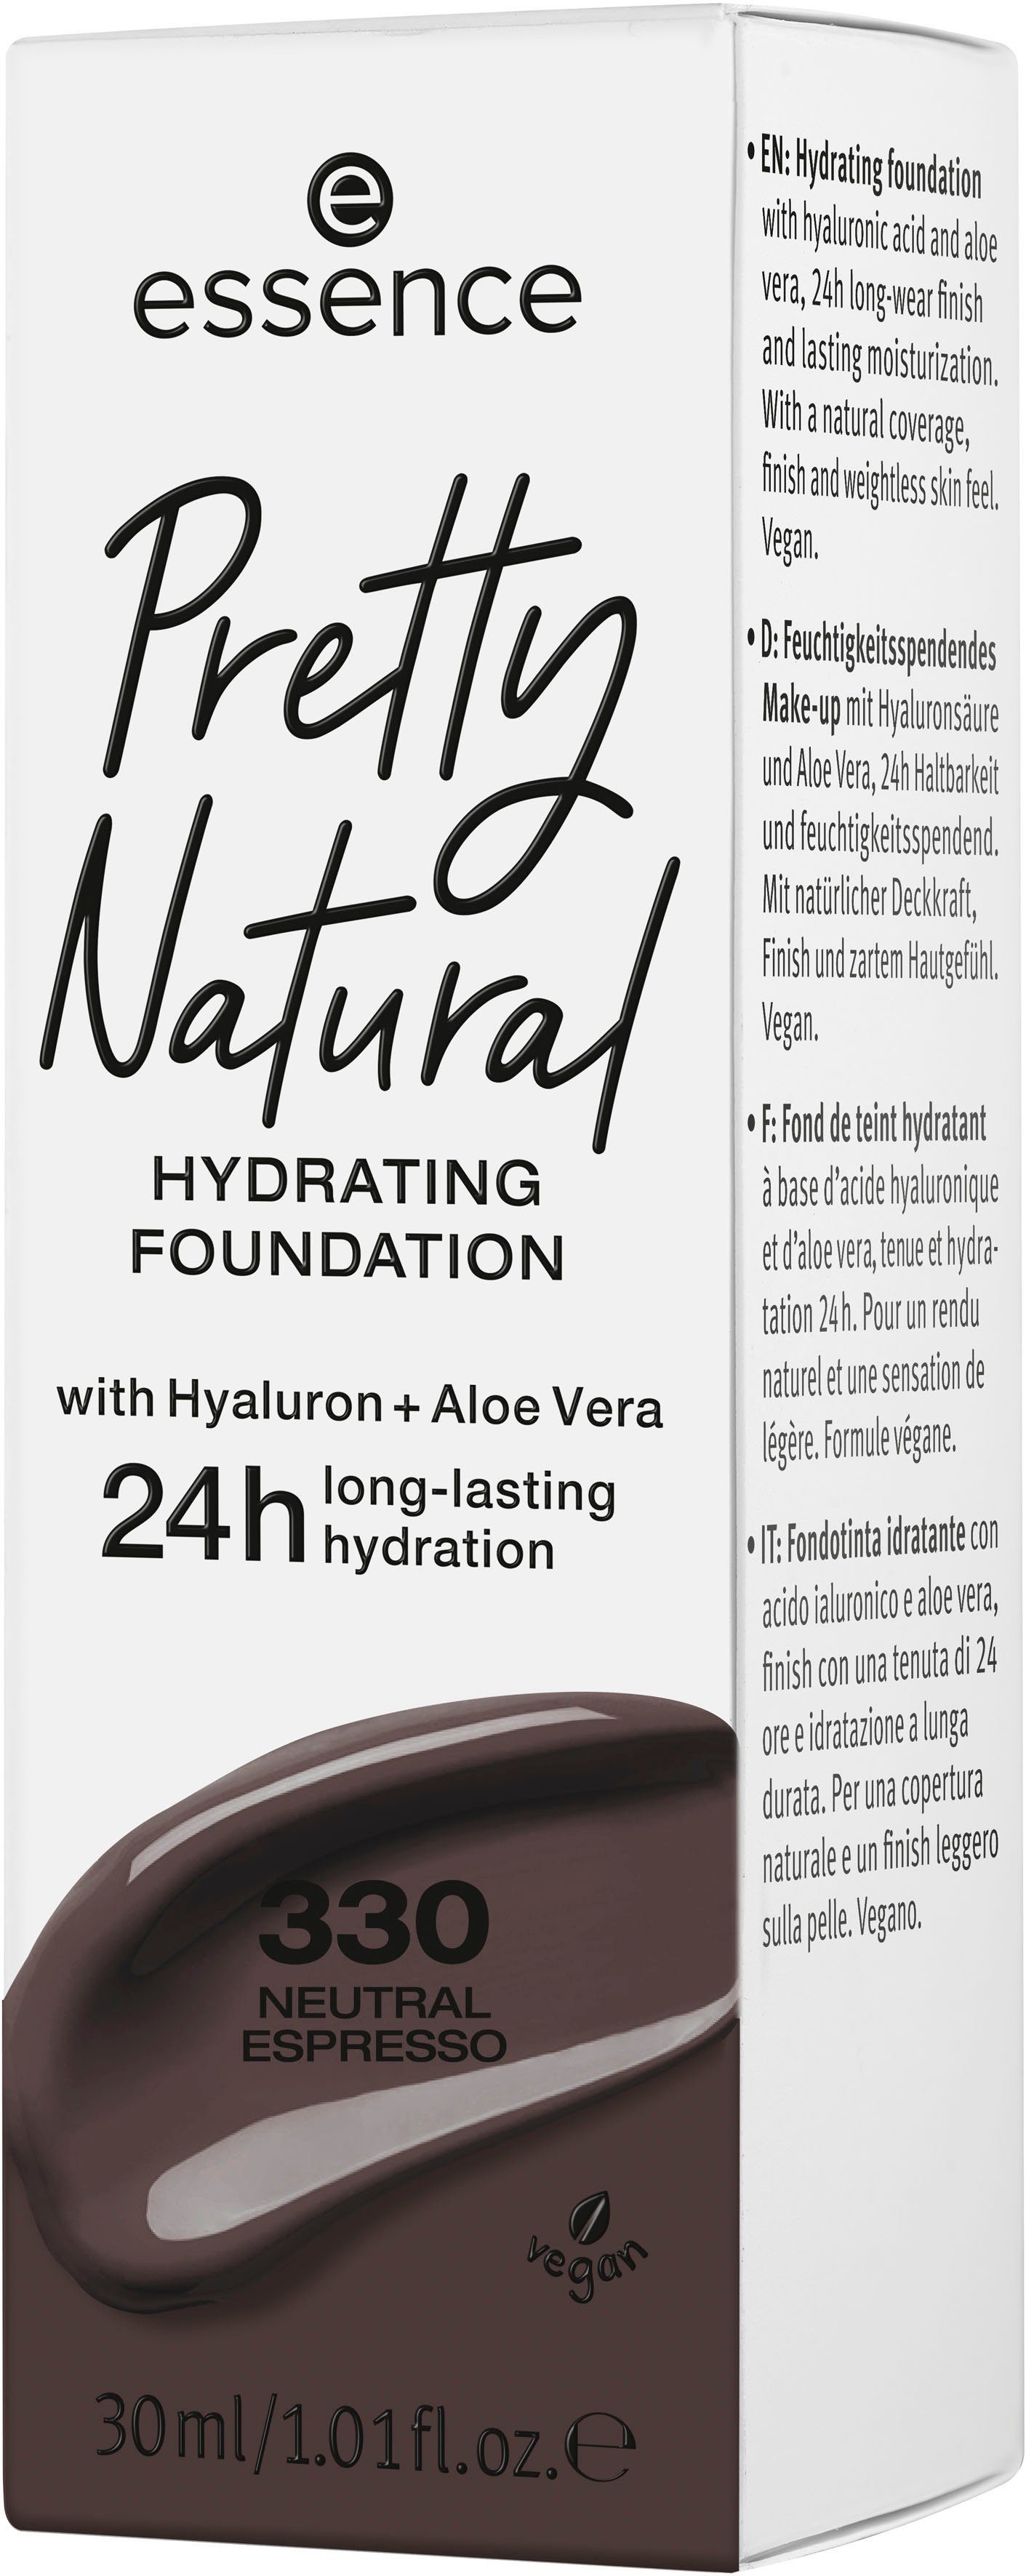 3-tlg. Essence Pretty Neutral HYDRATING, Foundation Natural Espresso